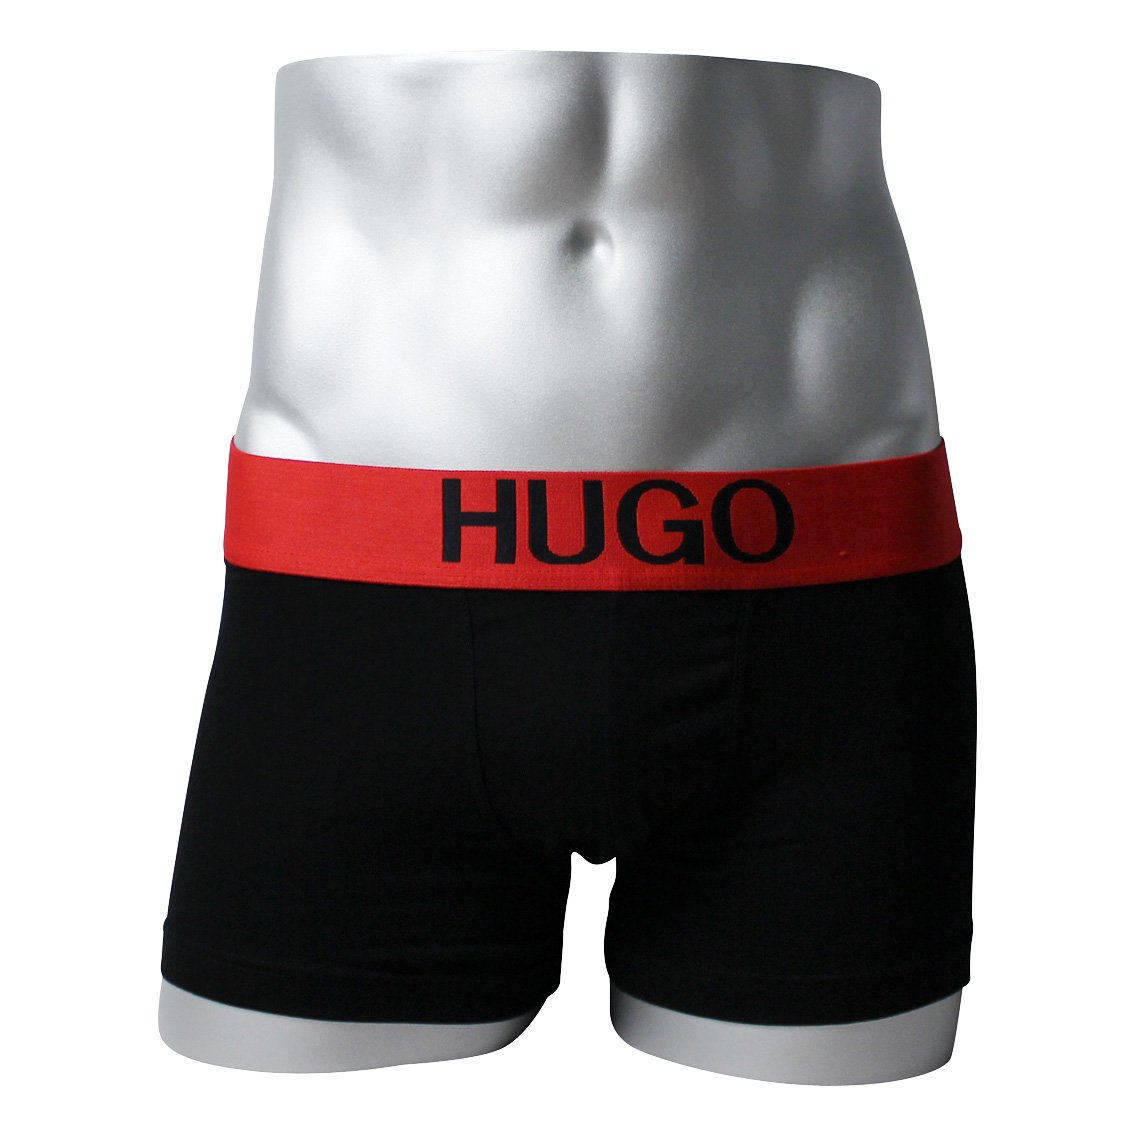 HUGO BOSS(ヒューゴ・ボス)[50428876-001]:ボクサーパンツ,男性下着,インナーの通販